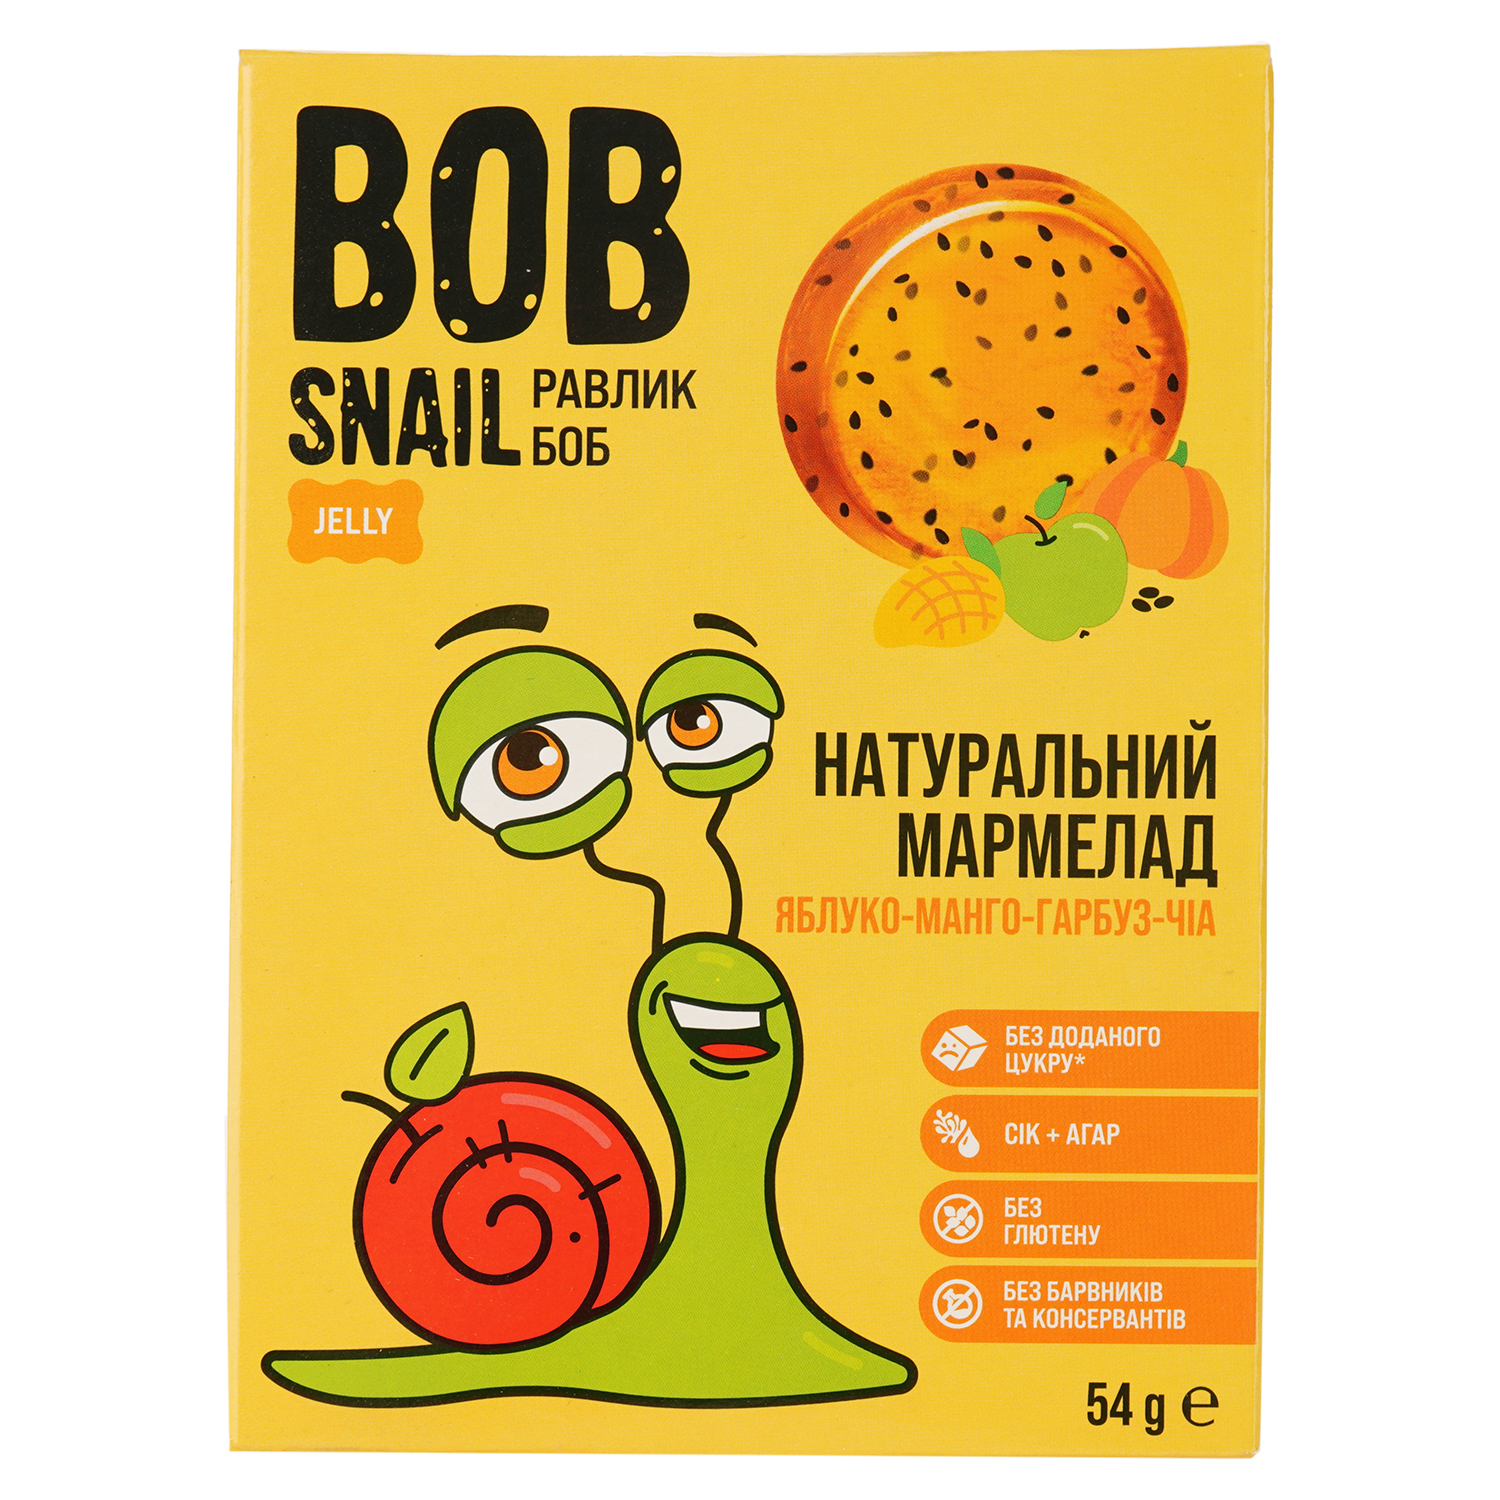 Фруктово-овочевий мармелад Bob Snail Яблуко-Манго-Гарбуз-Чіа 54 г - фото 1